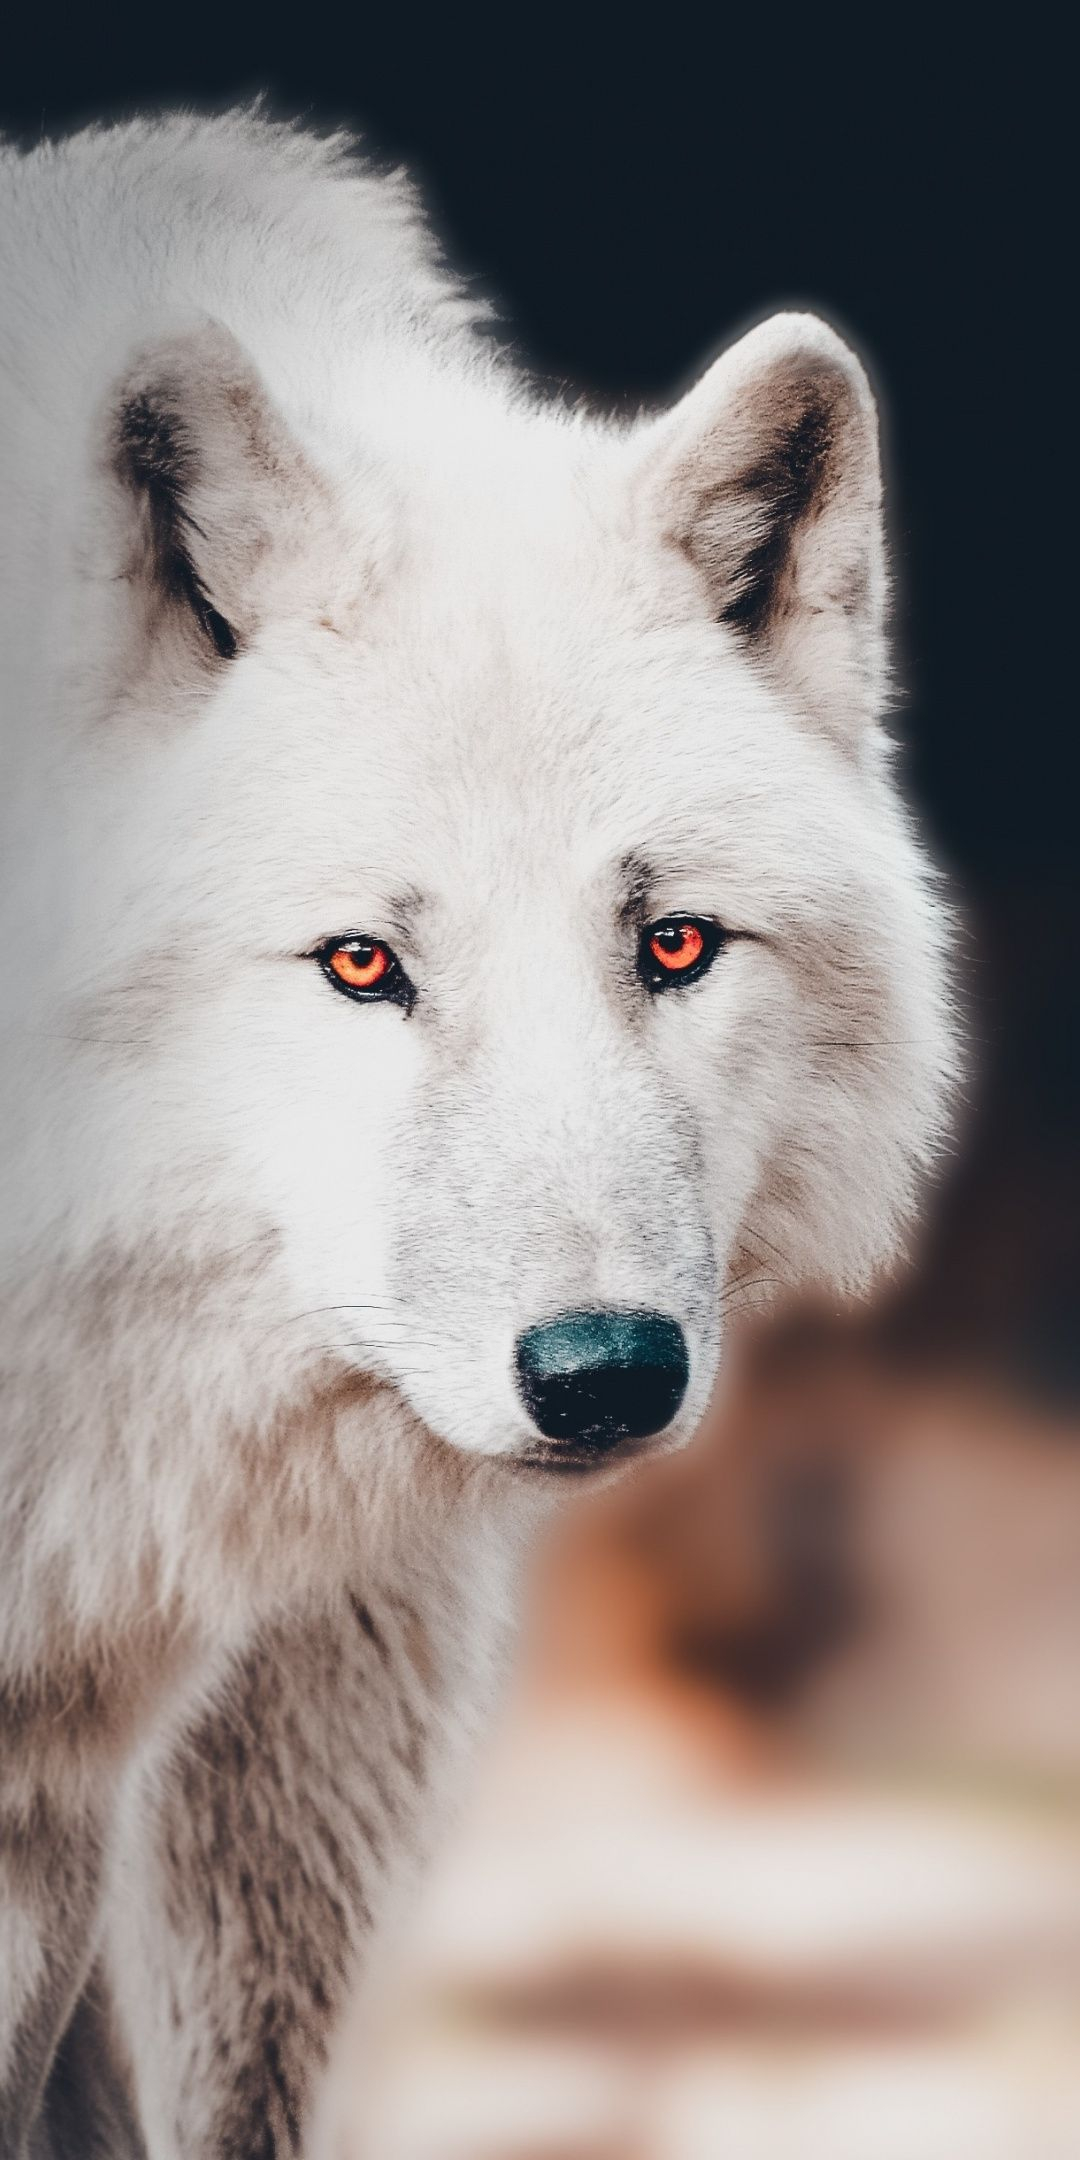 1080x2160 The white wolf, portrait wallpaper | Wolf dog, Wolf eyes, Wolf spirit animal